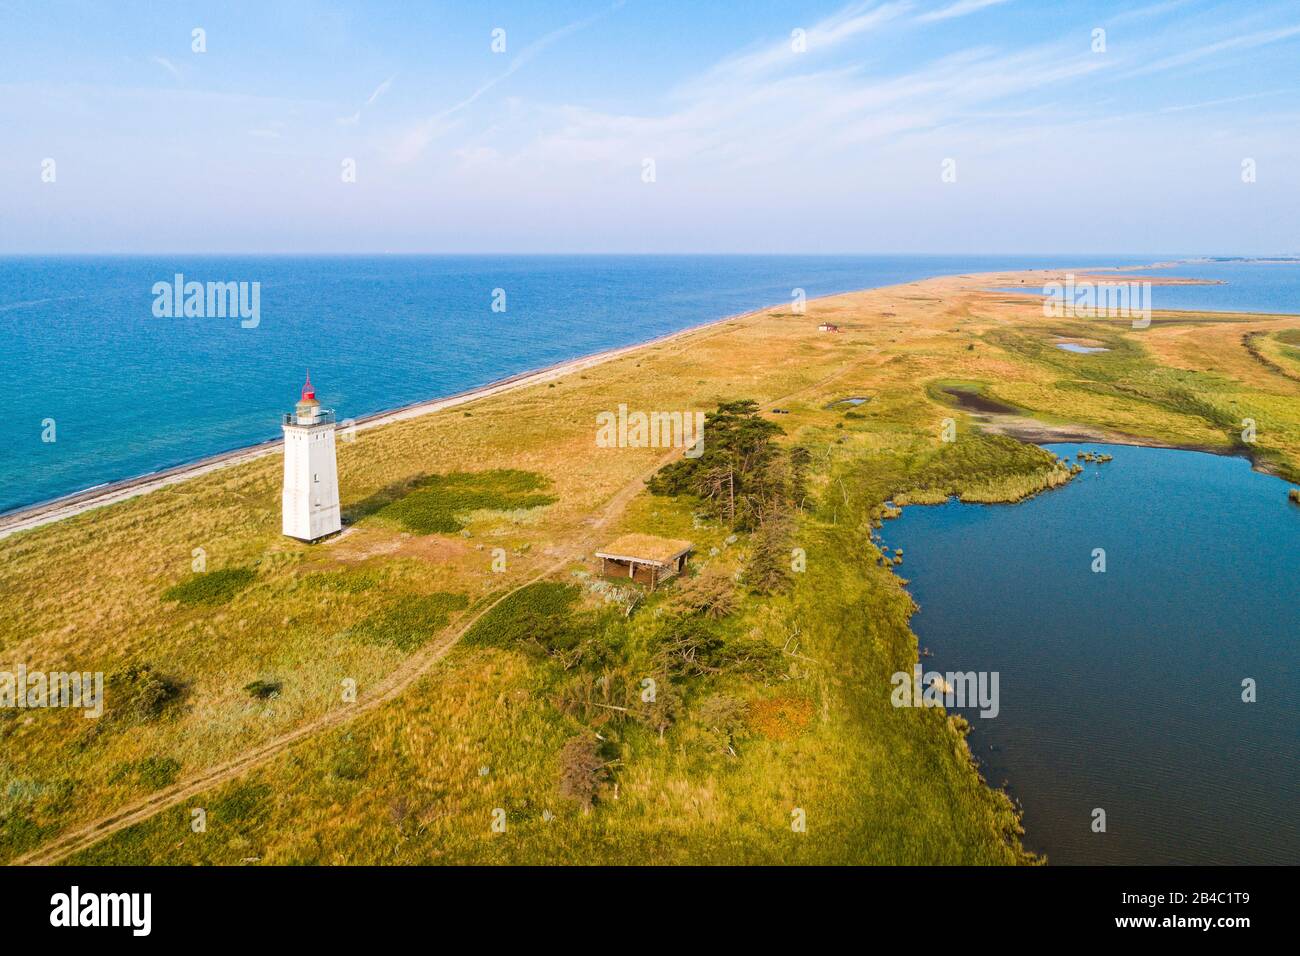 Il Lighthouse Hyllekrok Fyr sull'isola danese di Lolland. Il faro è stato costruito nel 1905. Foto Stock